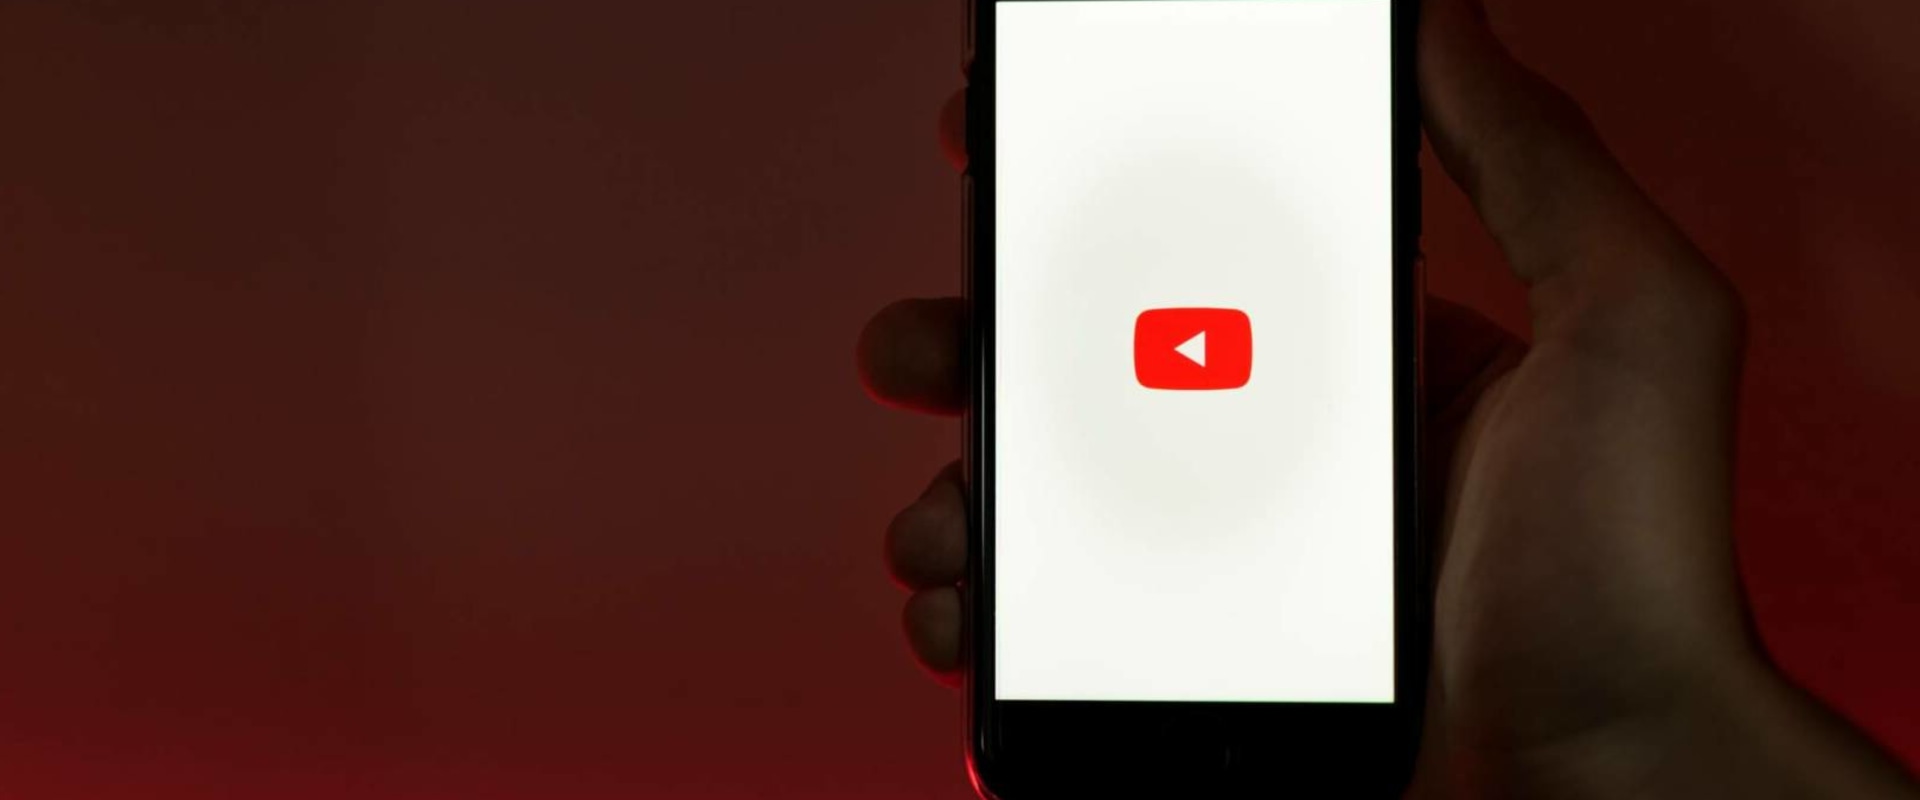 Come fanno le visualizzazioni di YouTube?